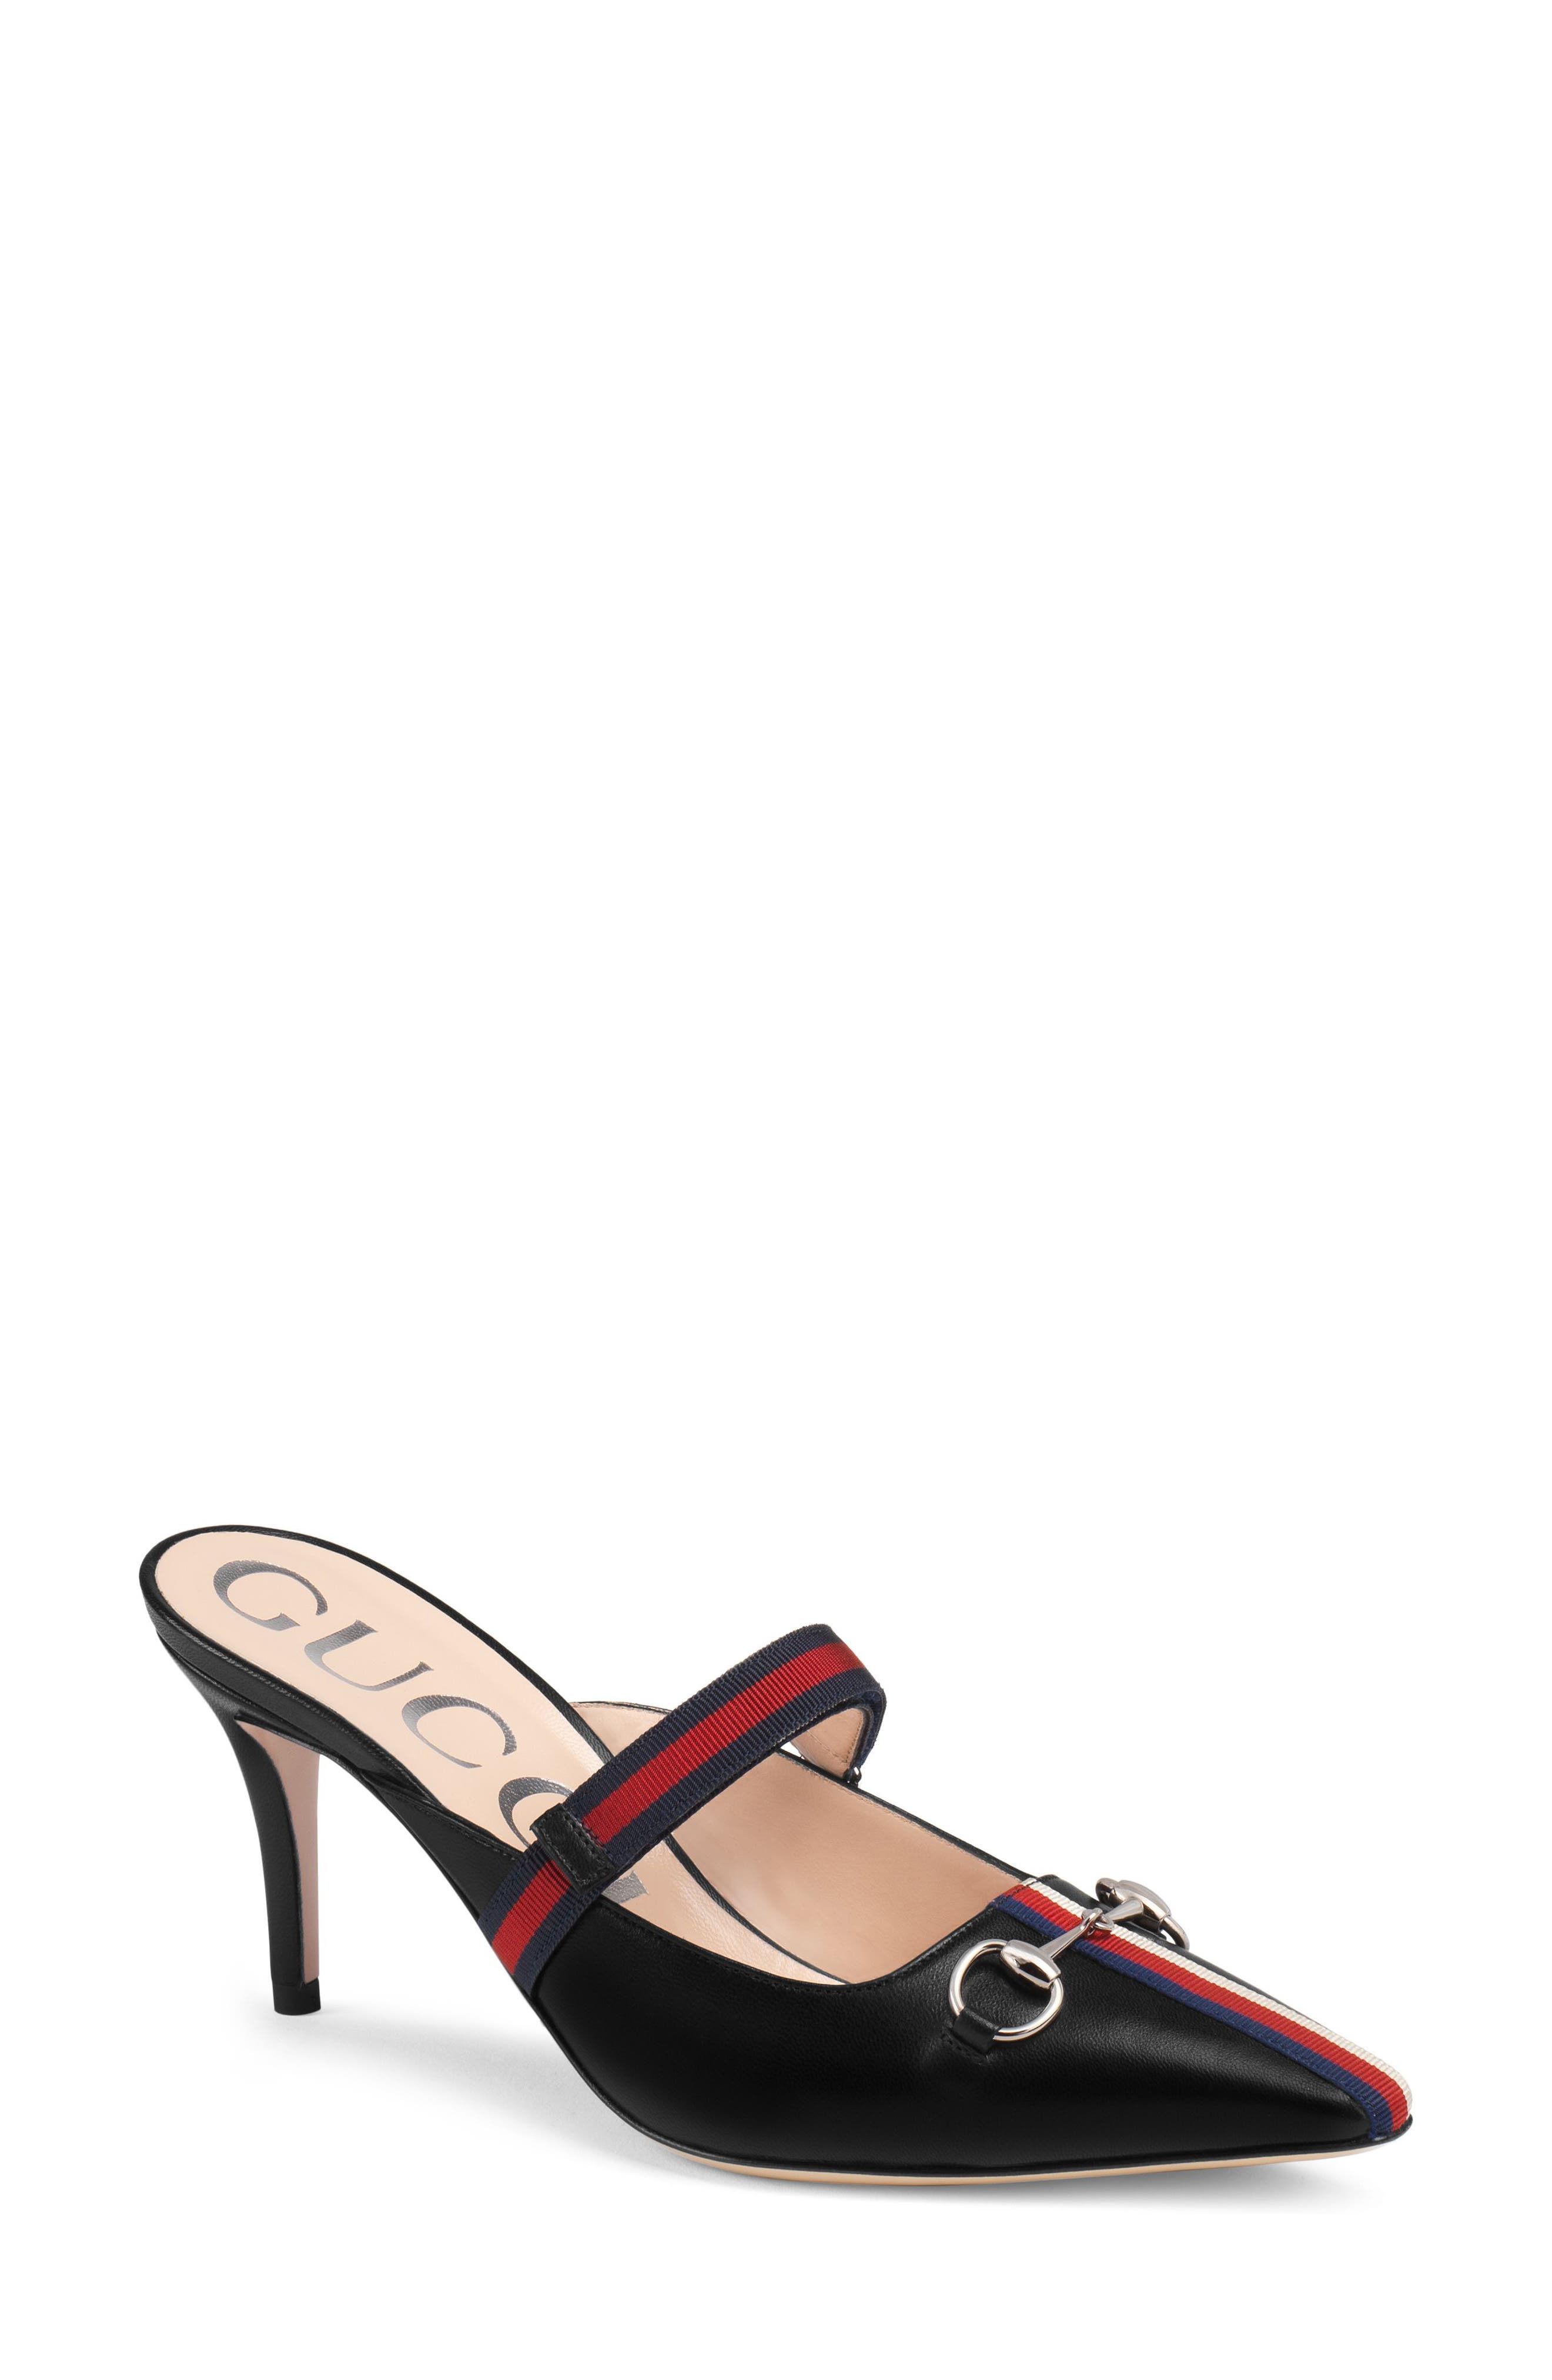 clarks rosalyn adele shoes